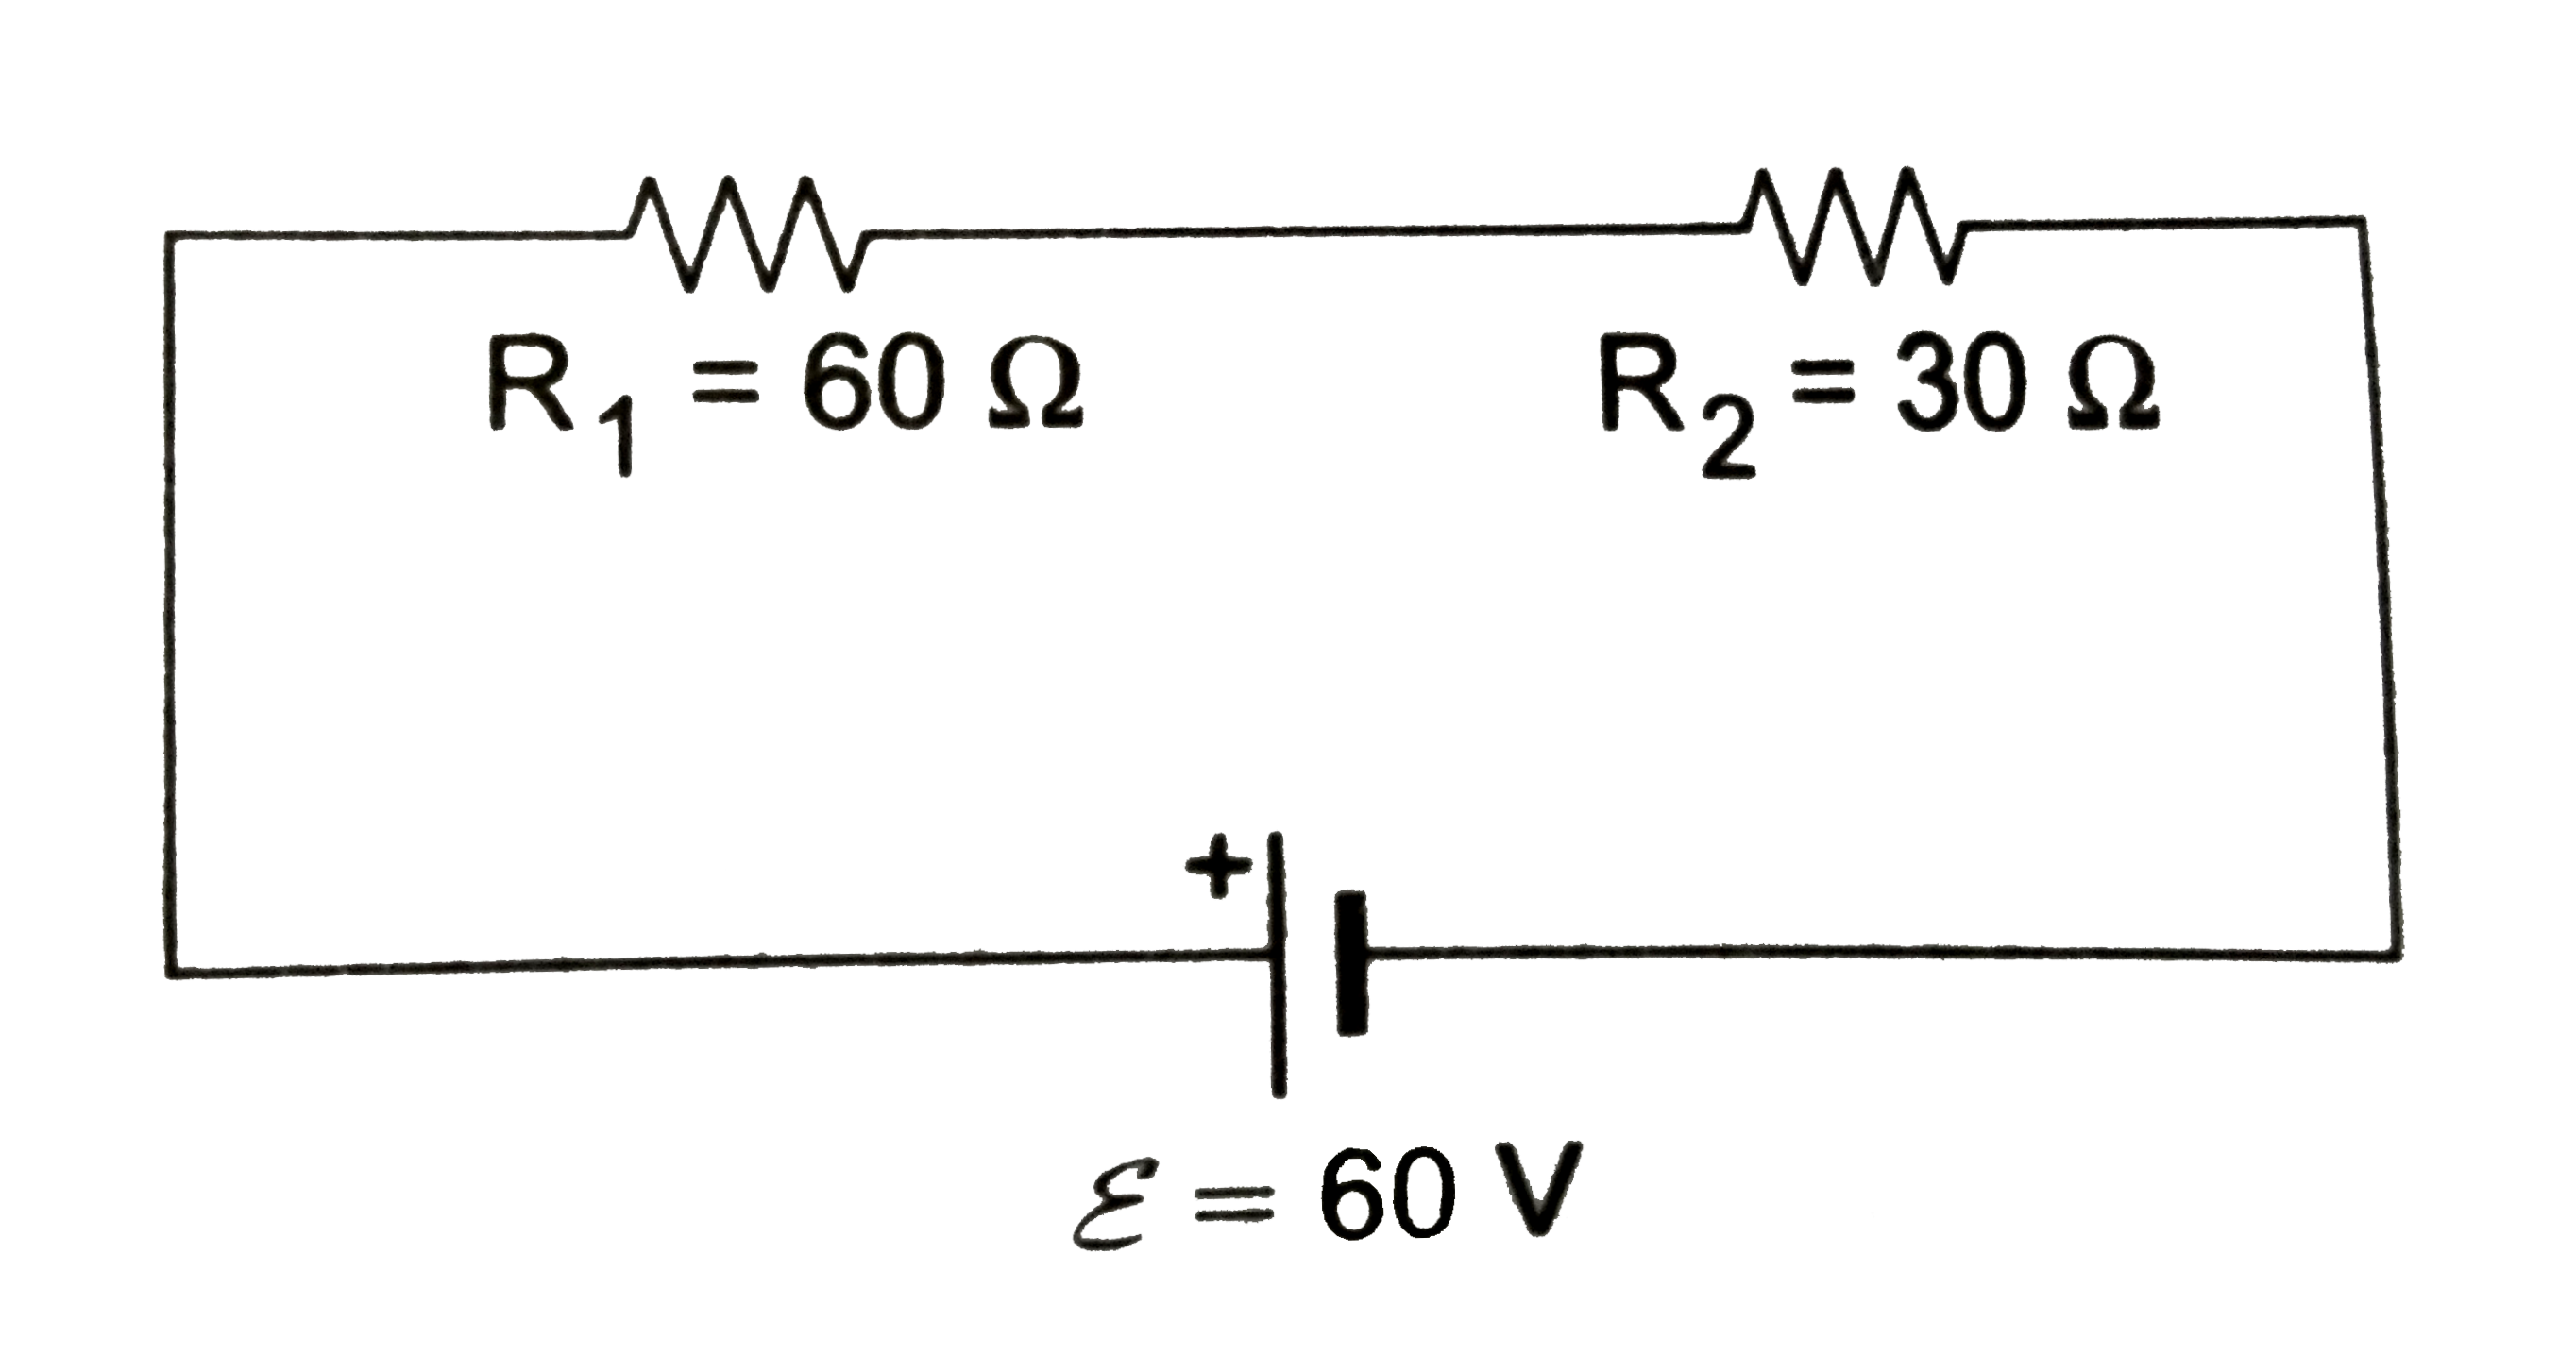 श्रेणीक्रम में जुड़े R(1) तथा R(2) प्रतिरोधक को नगण्य आंतरिक प्रतिरोध की आदर्श बैटरी के सिरों से जोड़ा गया है 60Omega  प्रतिरोध के किसी वाल्टमीटर को बारी-बारी से R(1) तथा  R(2)  के सिरों के बीच जोड़ने पर V(1) तथा  V(2) पठन प्राप्त होते है।